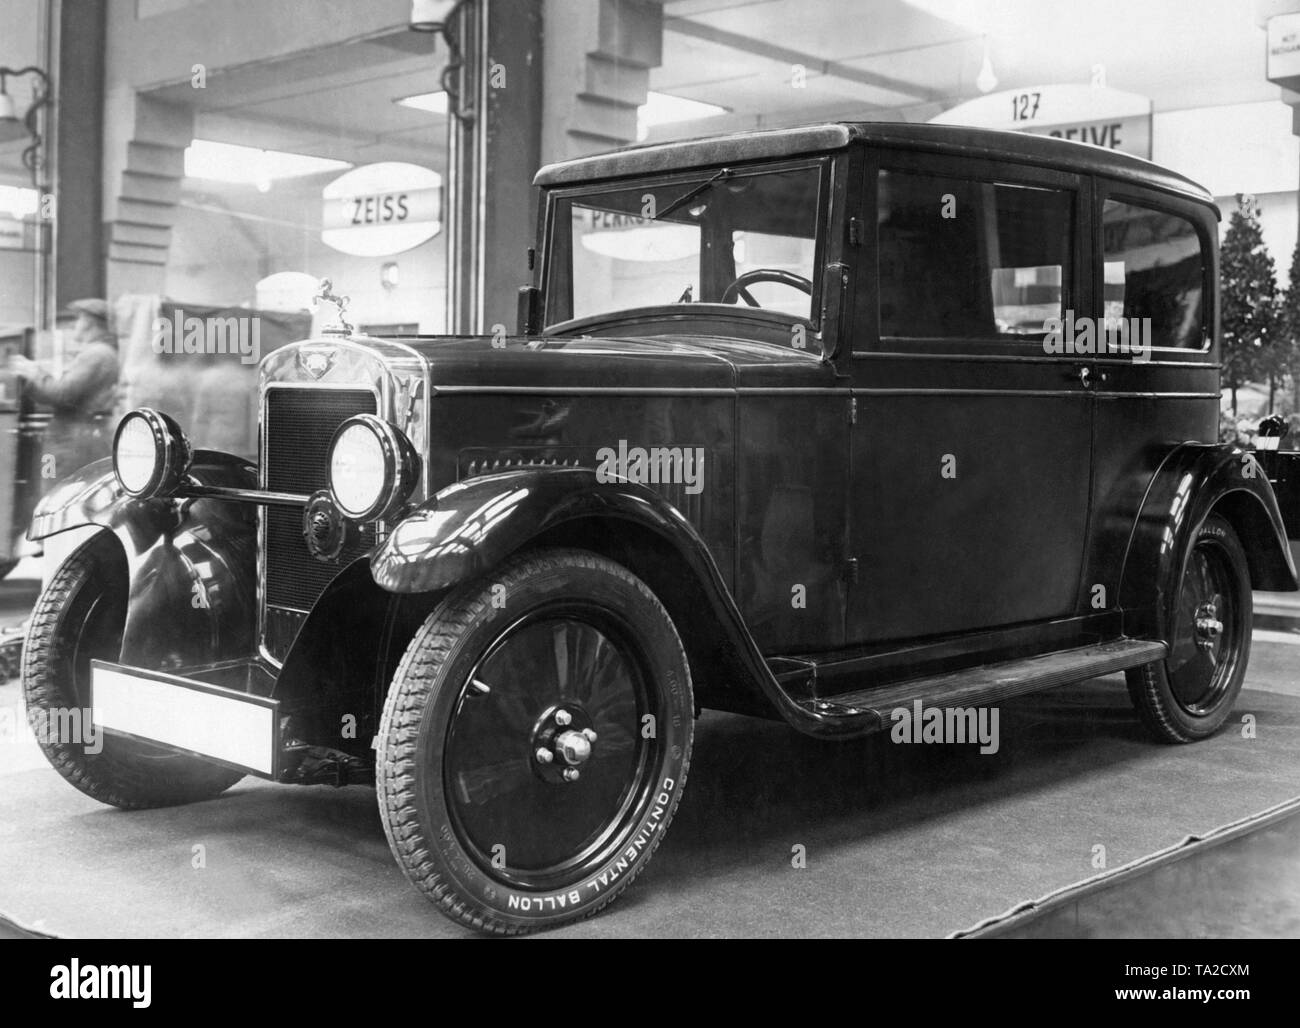 Un Hanomag 4/23 hp à l'International Motor Show 1931 à Berlin. Hannoversche Maschinenbau AG était une société fondée en 1871 qui a produit des locomotives, camions, tracteurs agricoles, machines de construction et les voitures Banque D'Images